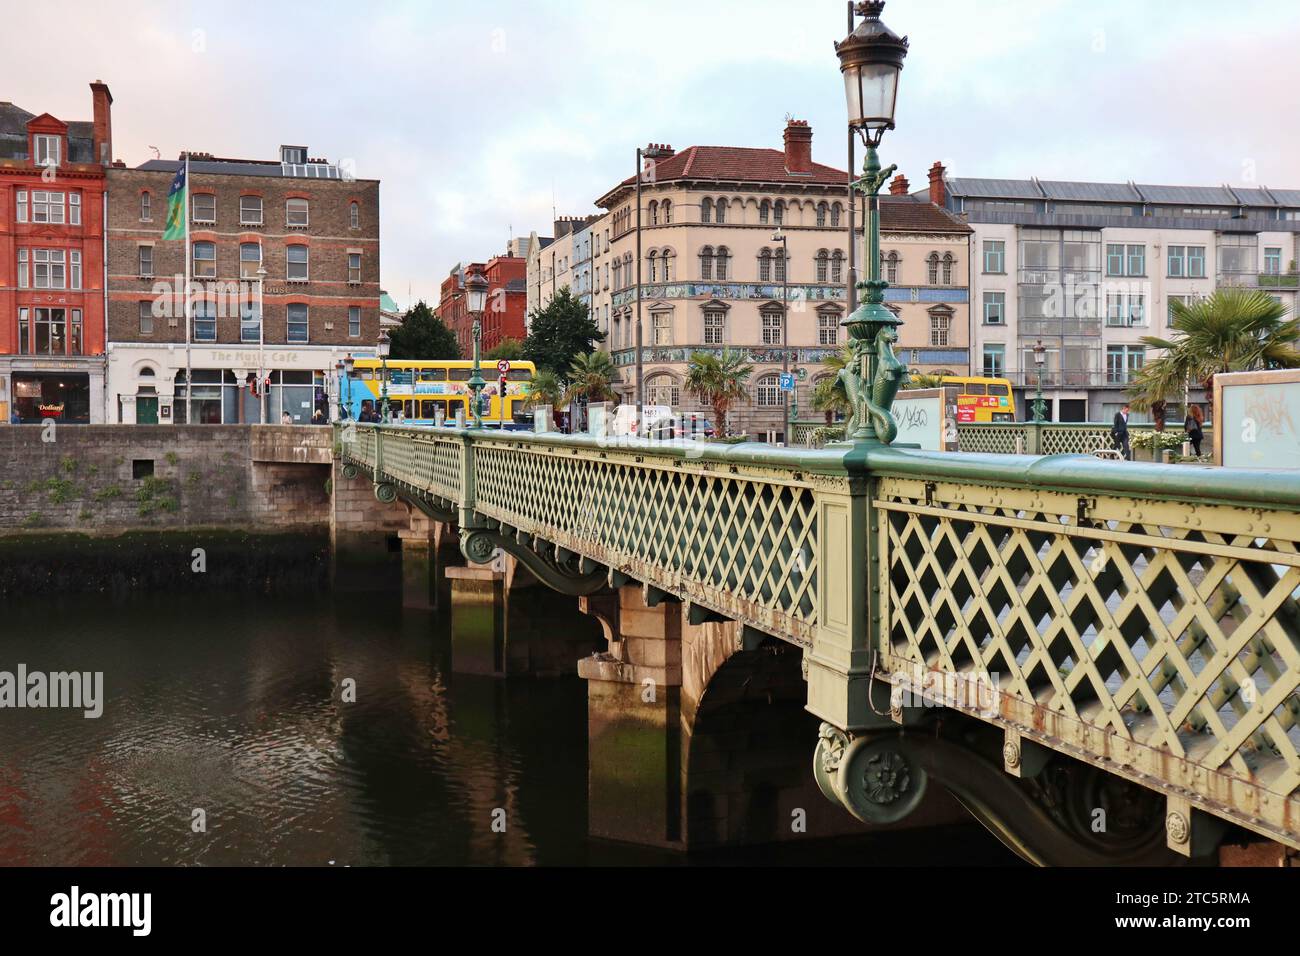 Dublino - Particolare dell'ottocentesco Grattan Bridge Stock Photo